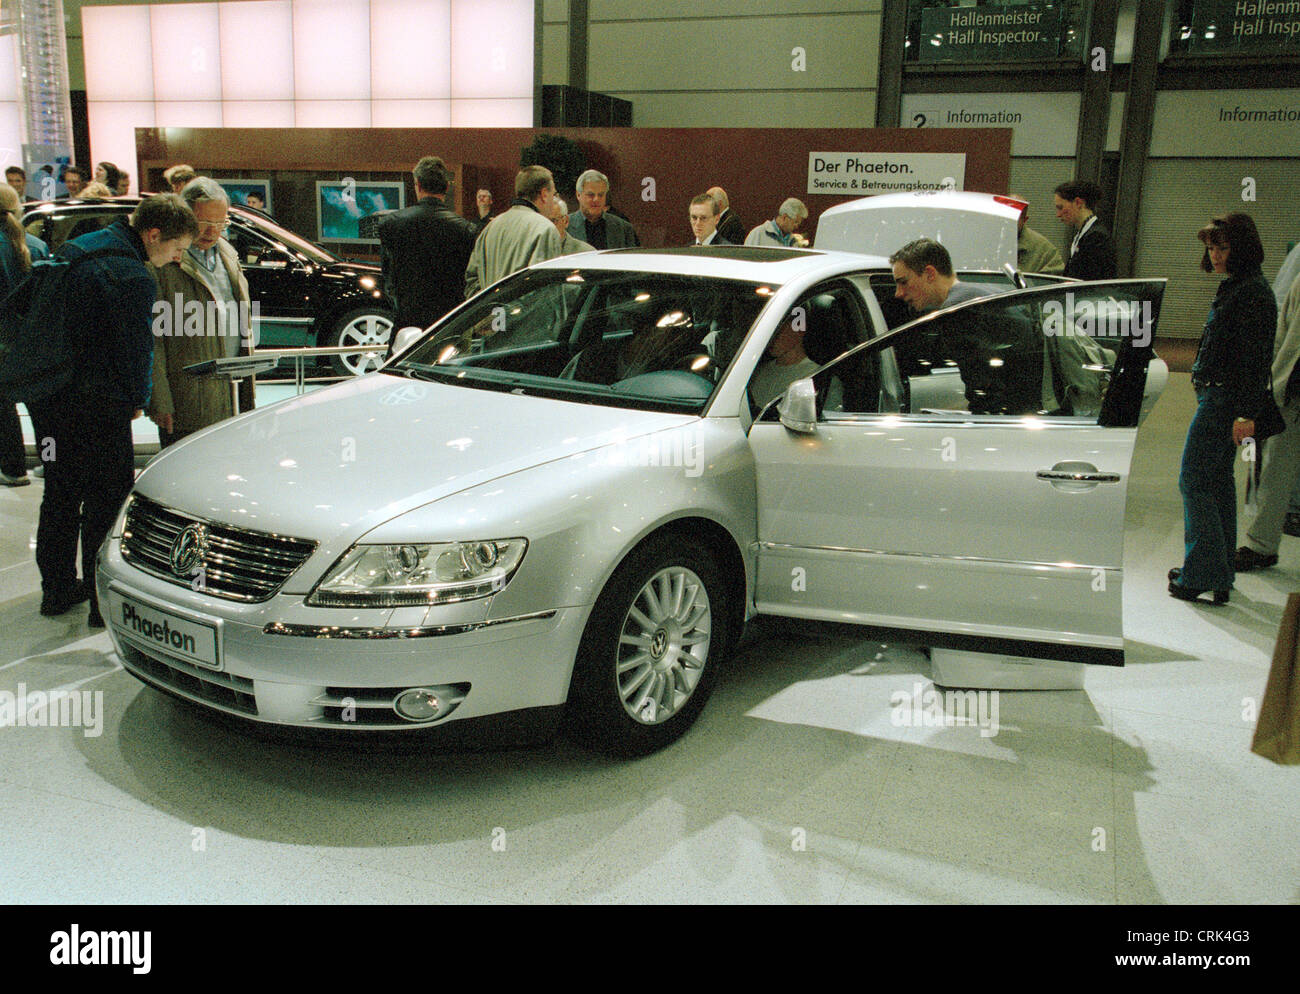 Presentation of the Nobel Phaeton model of the Volkswagen Group Stock Photo